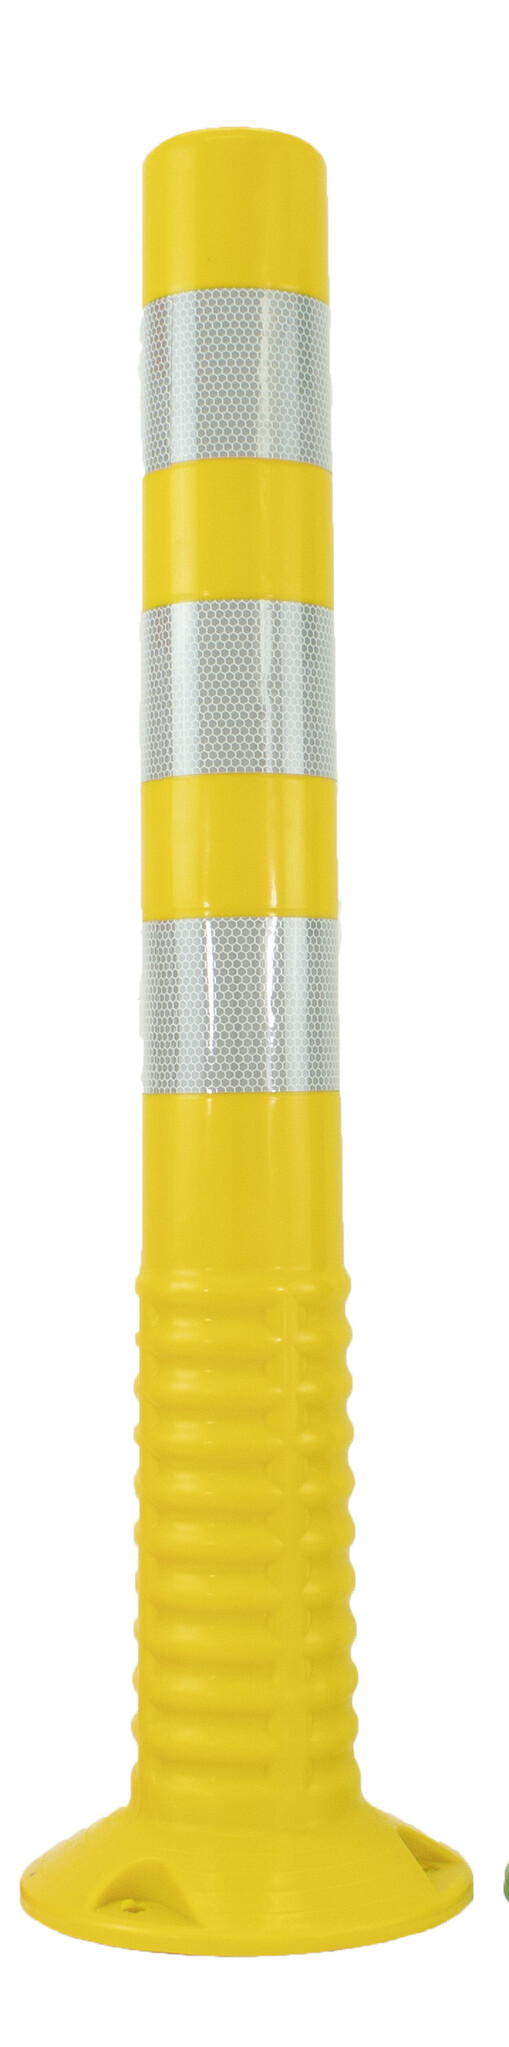 Plooibaken T-FLEX geel 75 cm